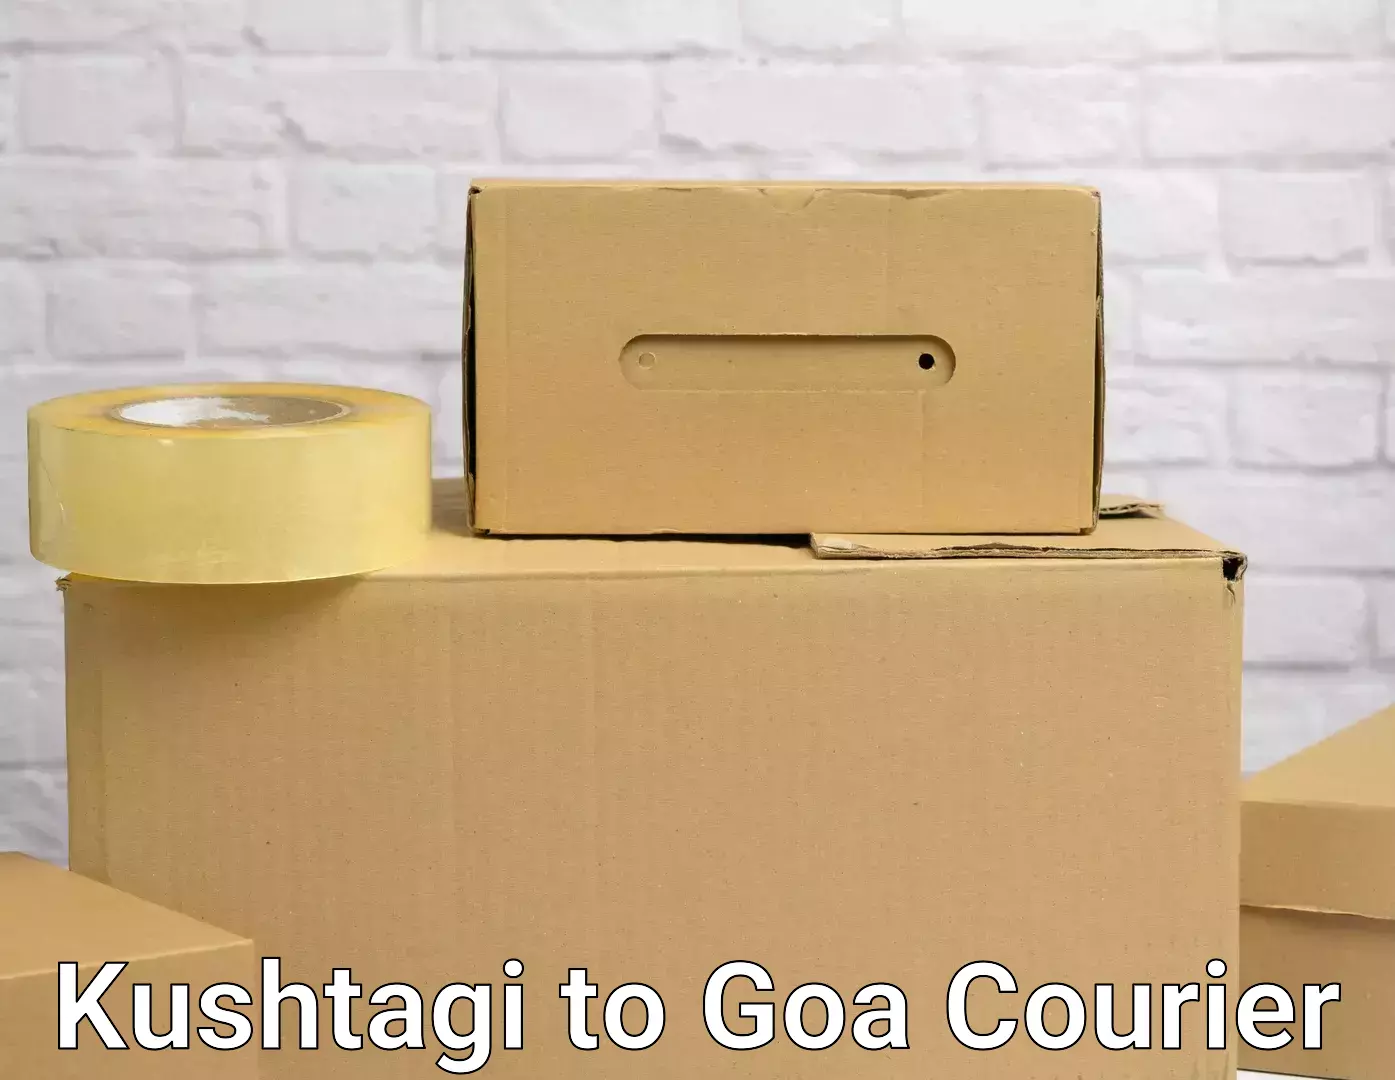 Full home relocation services Kushtagi to IIT Goa